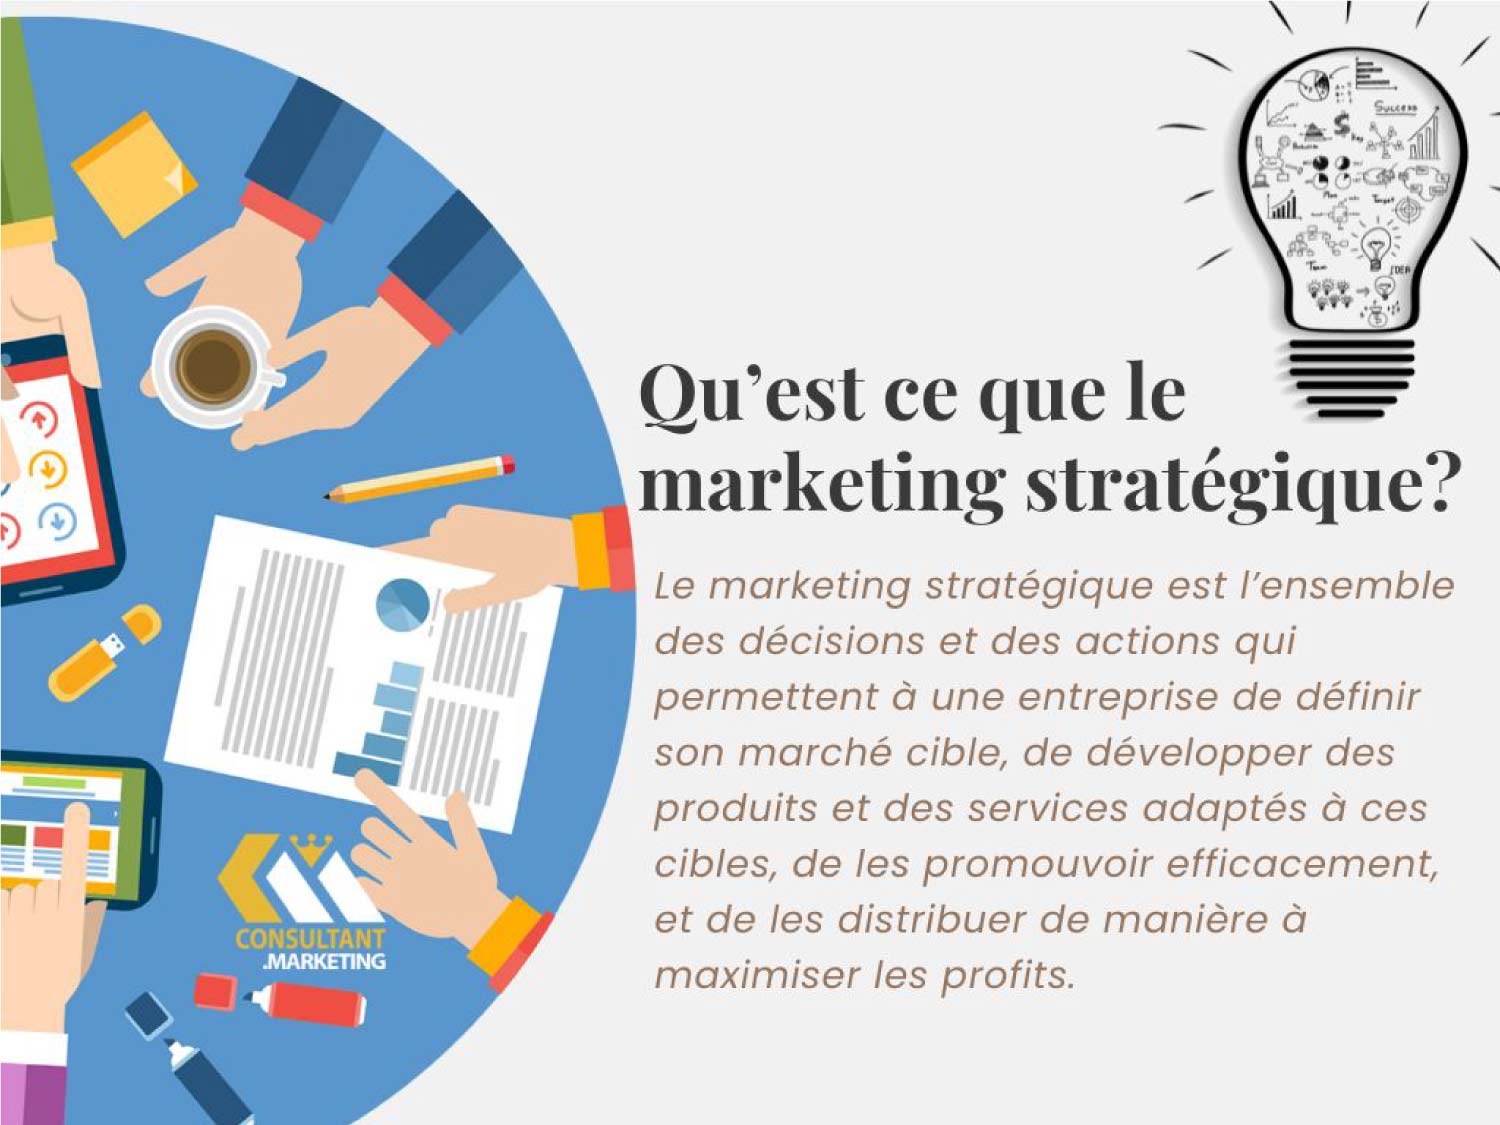 Qu’est ce que le marketing stratégique?